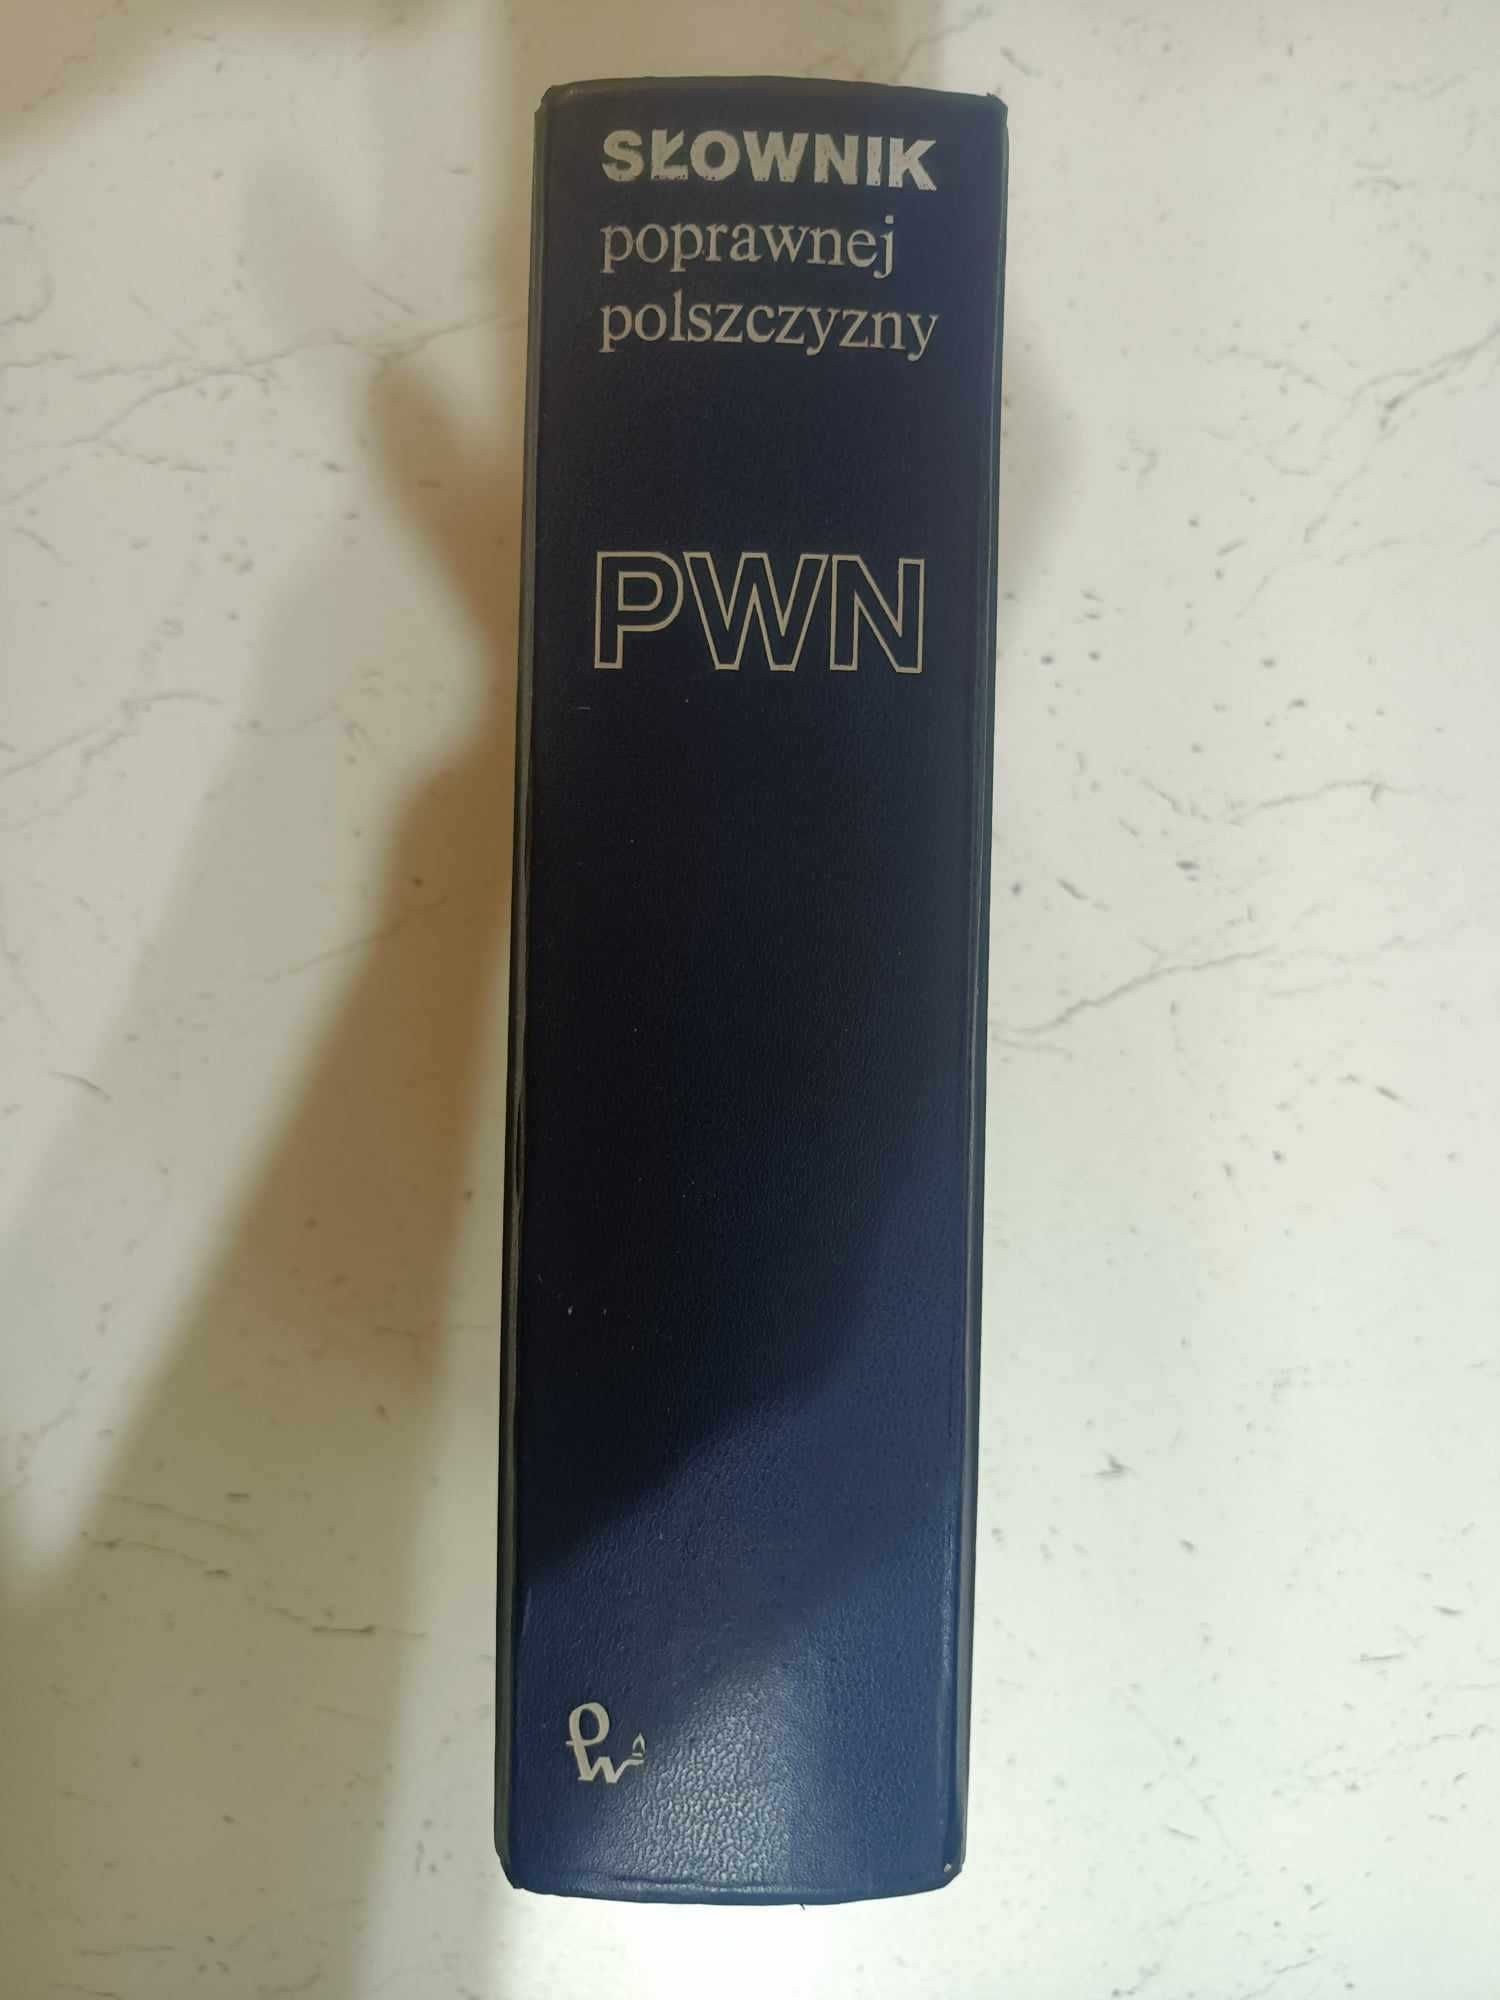 Słownik Ortograficzny Poprawnej Polszczyzny PWN